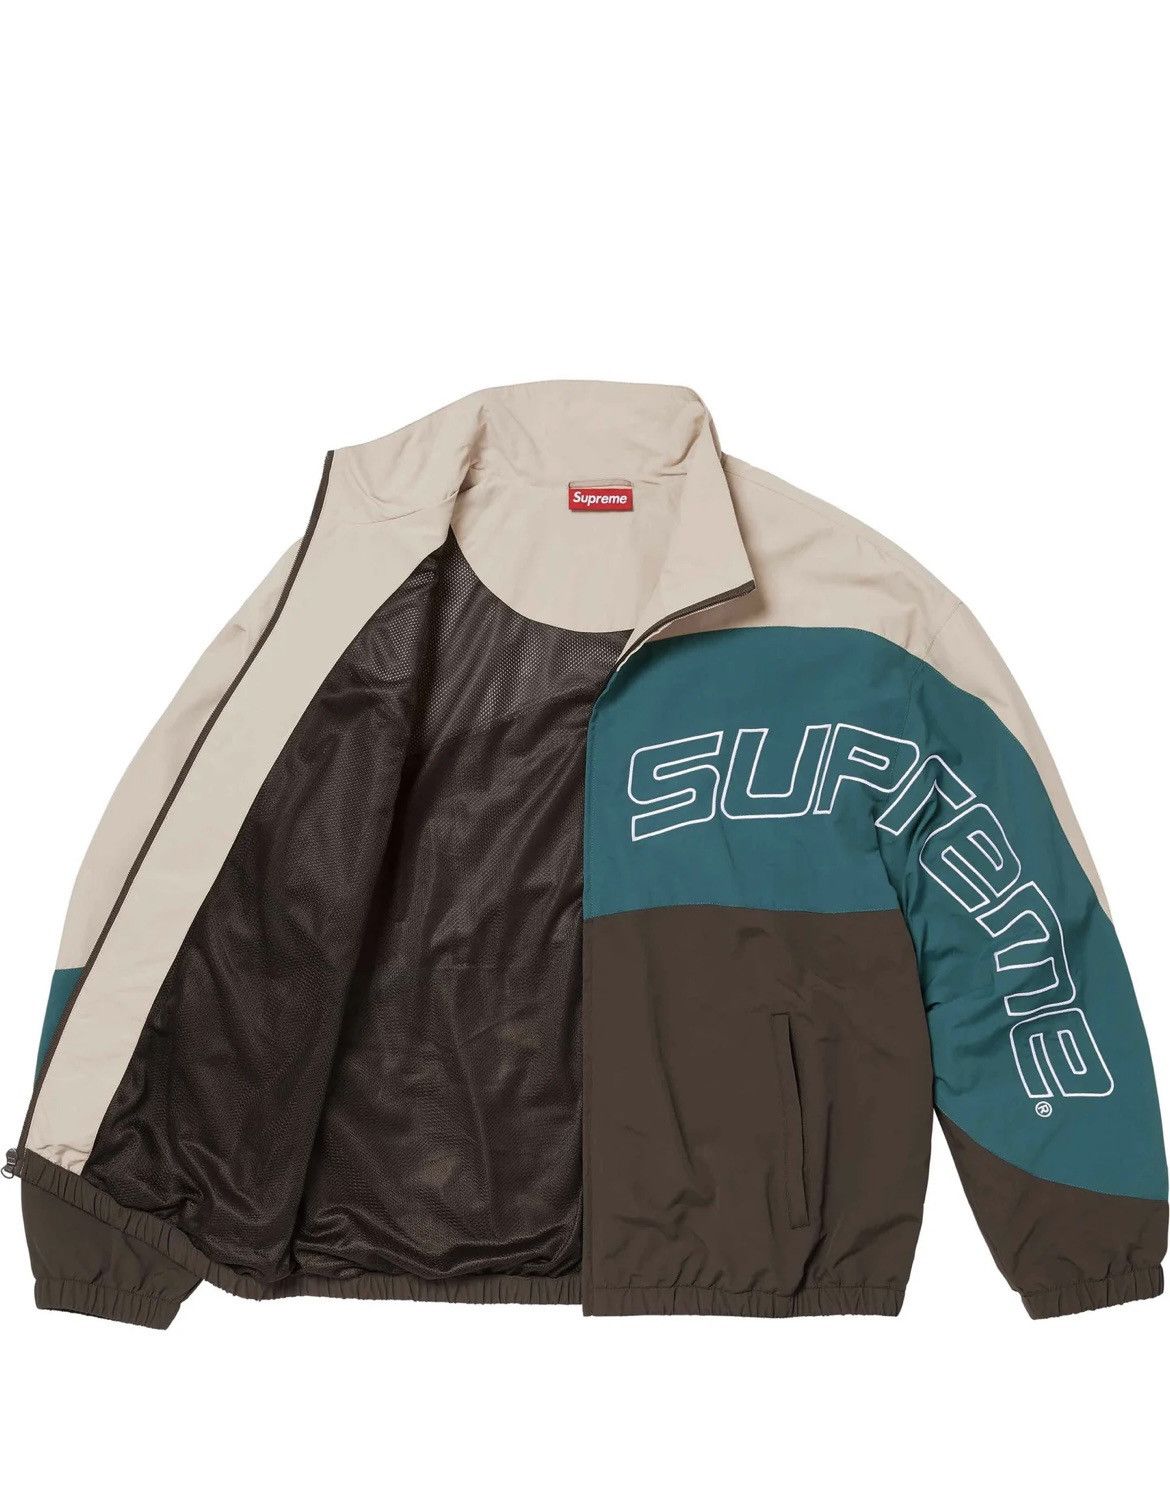 Supreme Supreme Curve Track Jacket Size Large | Grailed